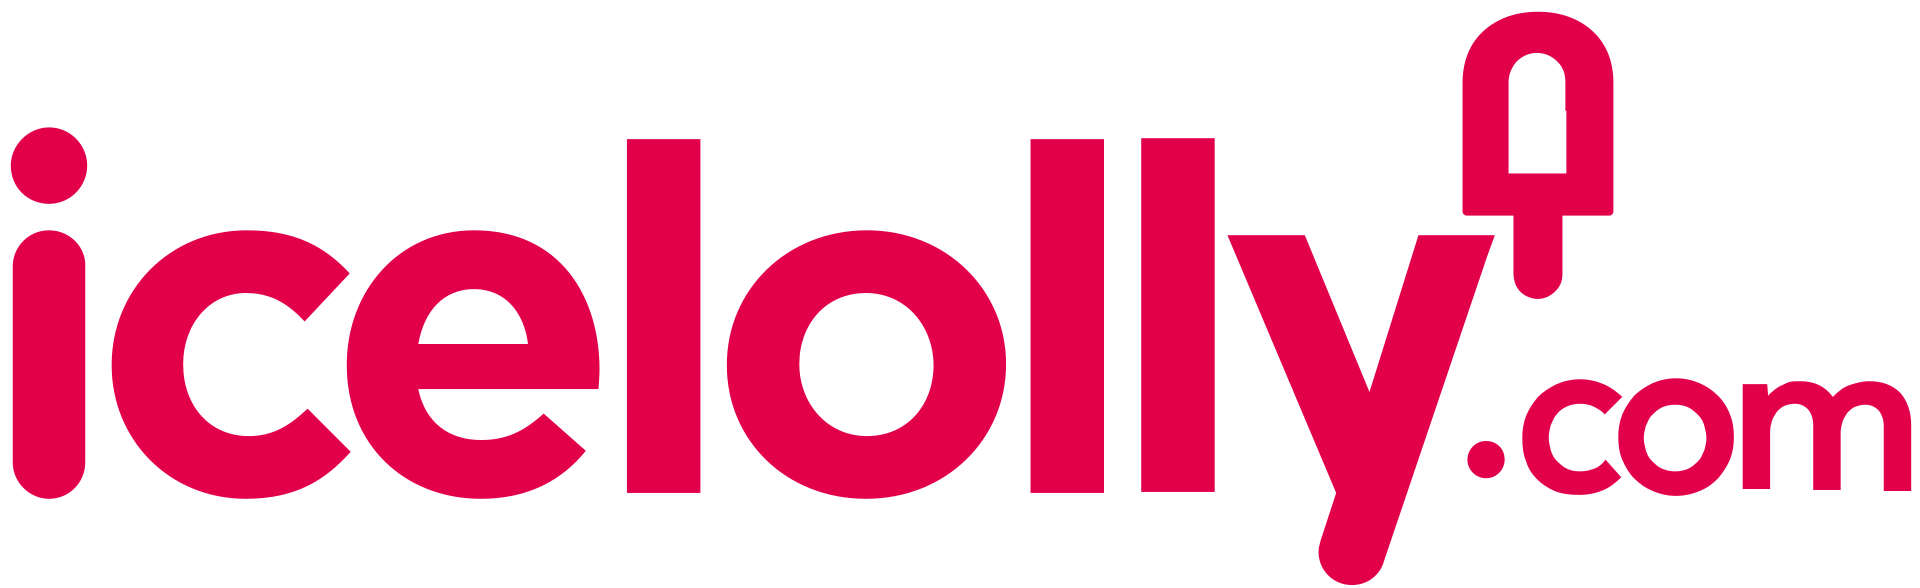 Résultat de recherche d'images pour "icelolly logo transparent"